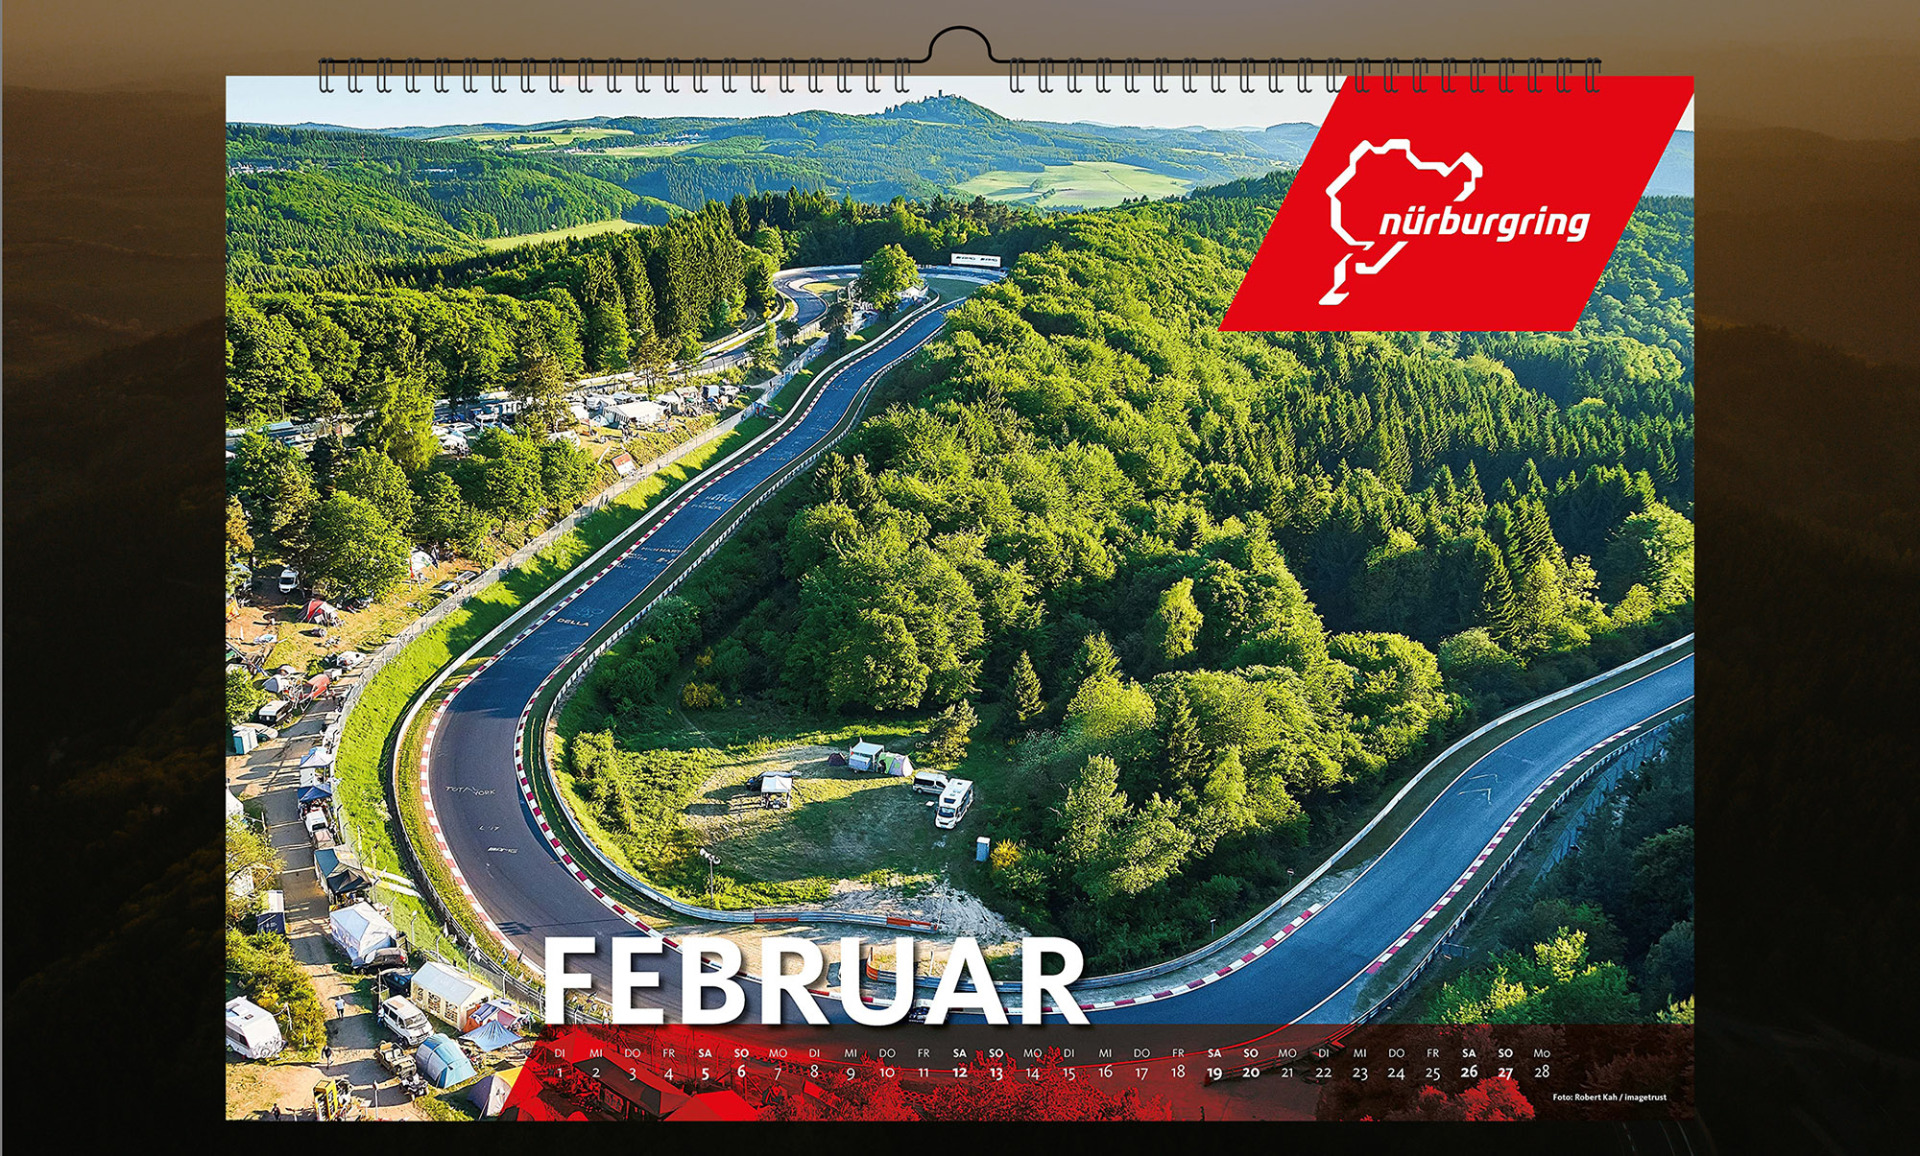 nurburgring tourist calendar